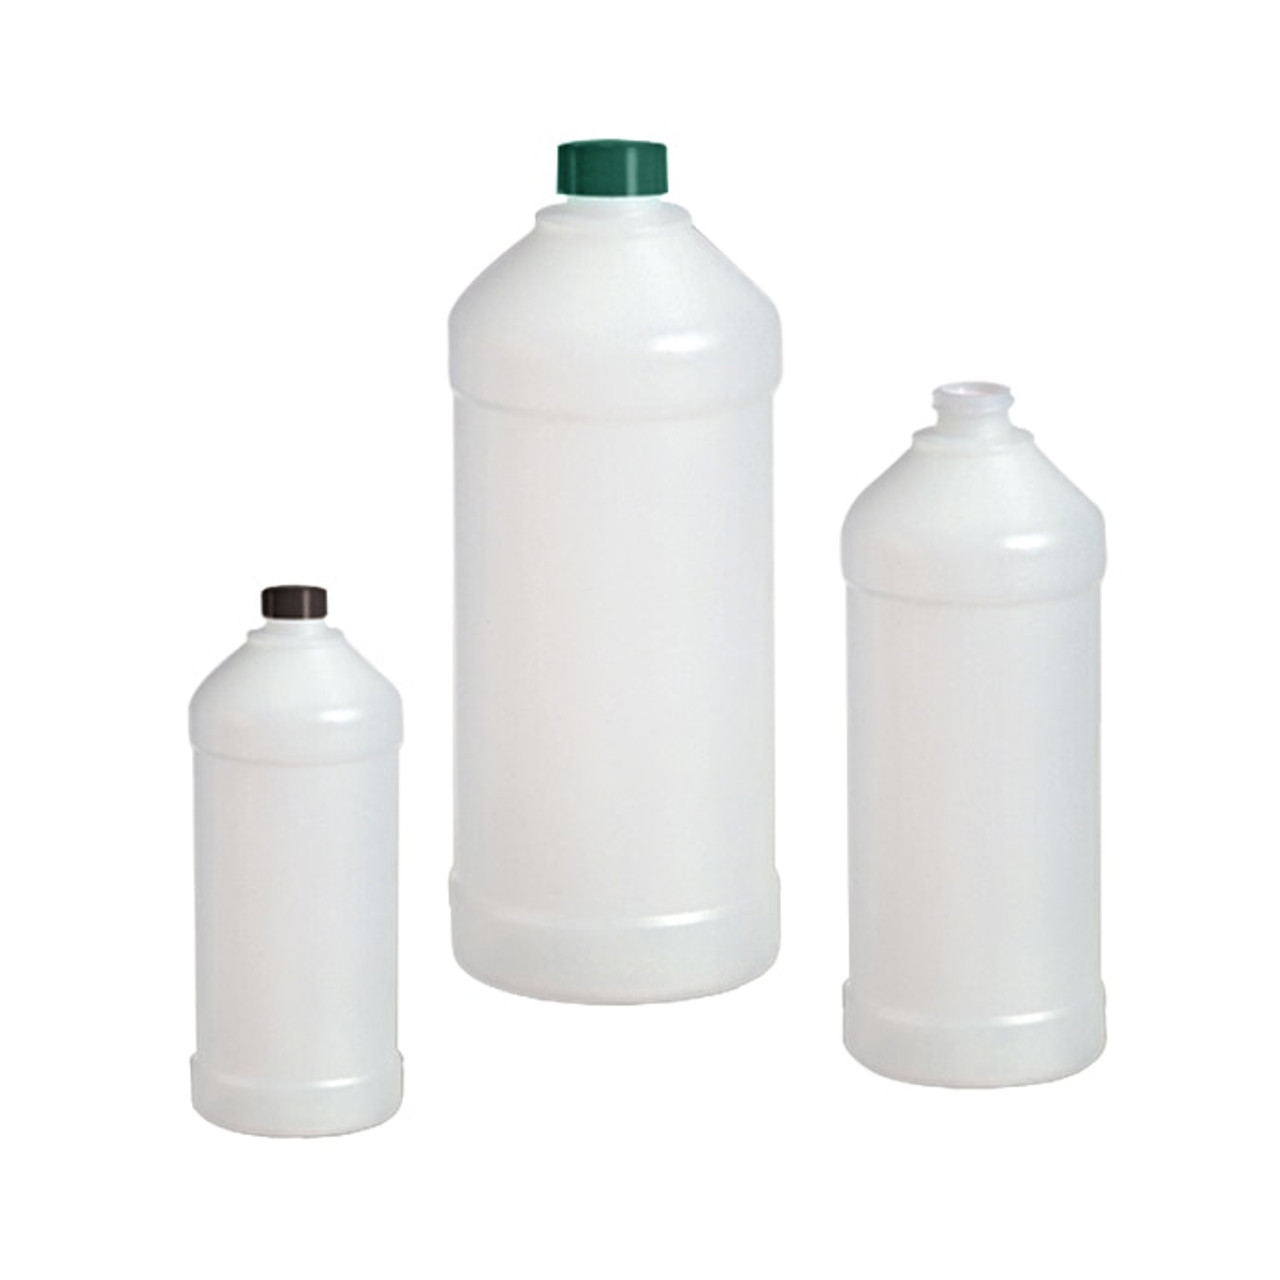 32 oz. White HDPE Plastic Trigger Spray Bottle, 28mm 28-400